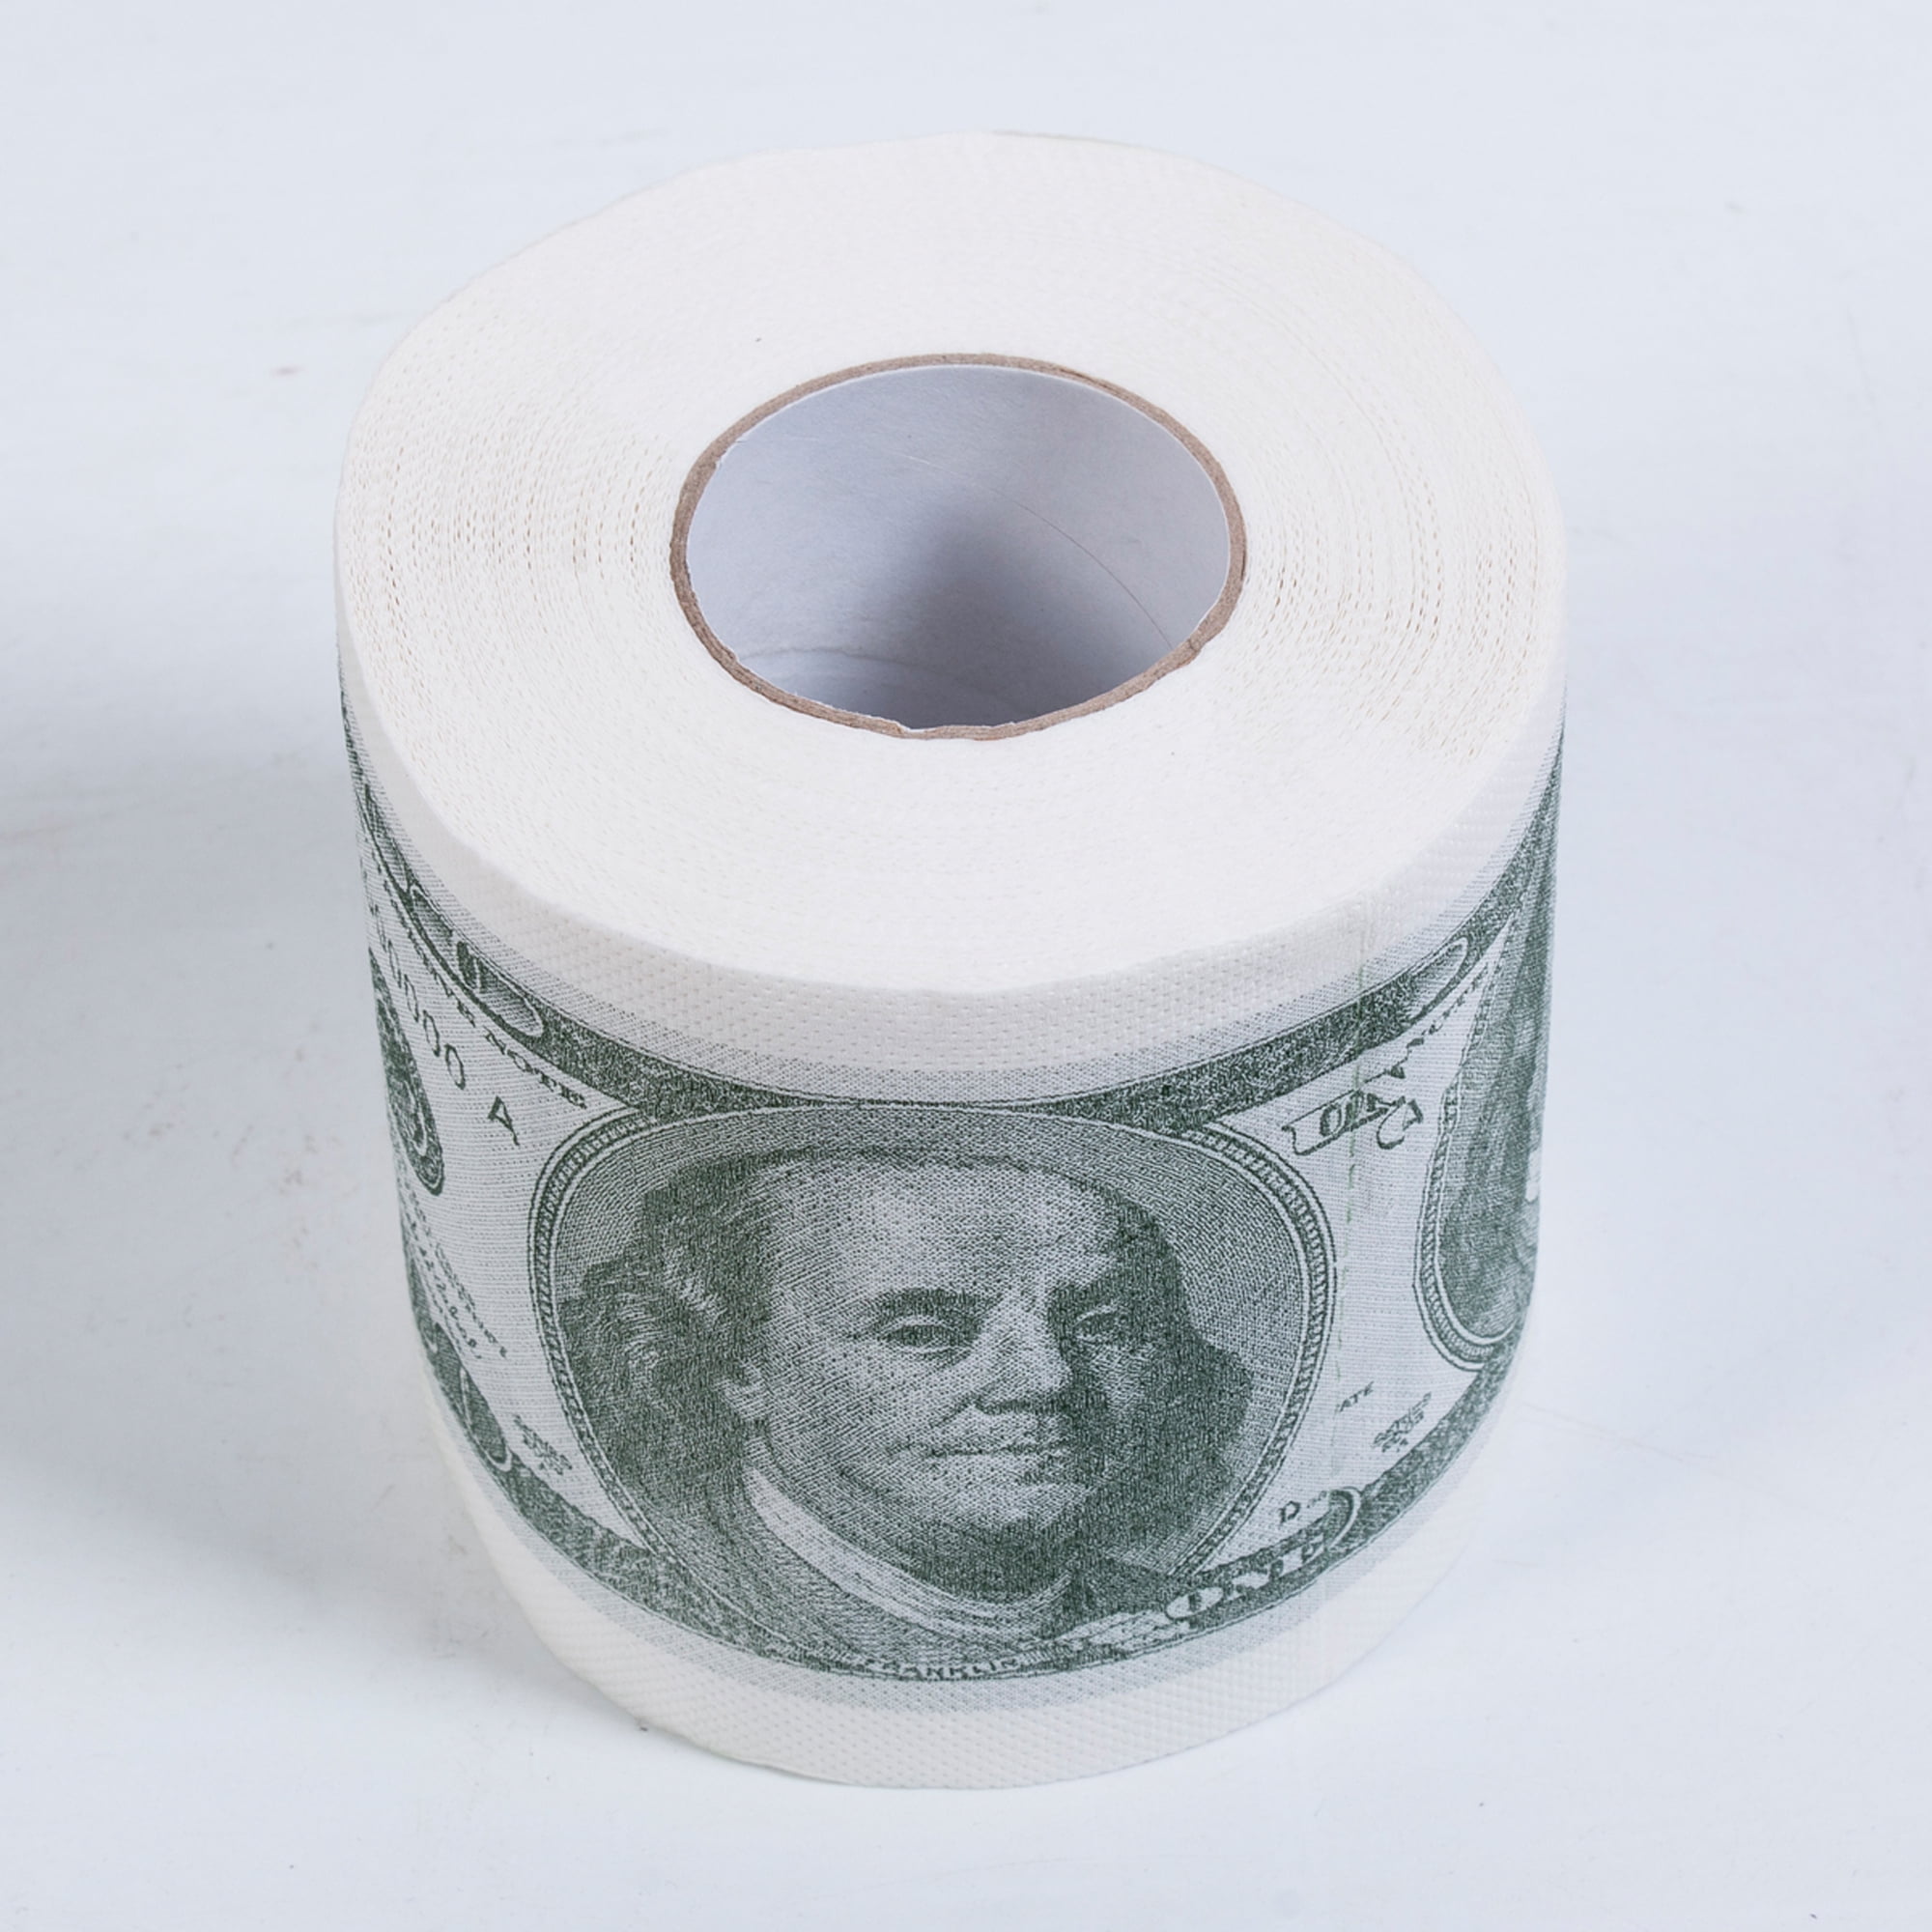 $100 One Hundred Dollar Bill Money Toilet Paper Novelty Party Gg Gift Humor Joke 